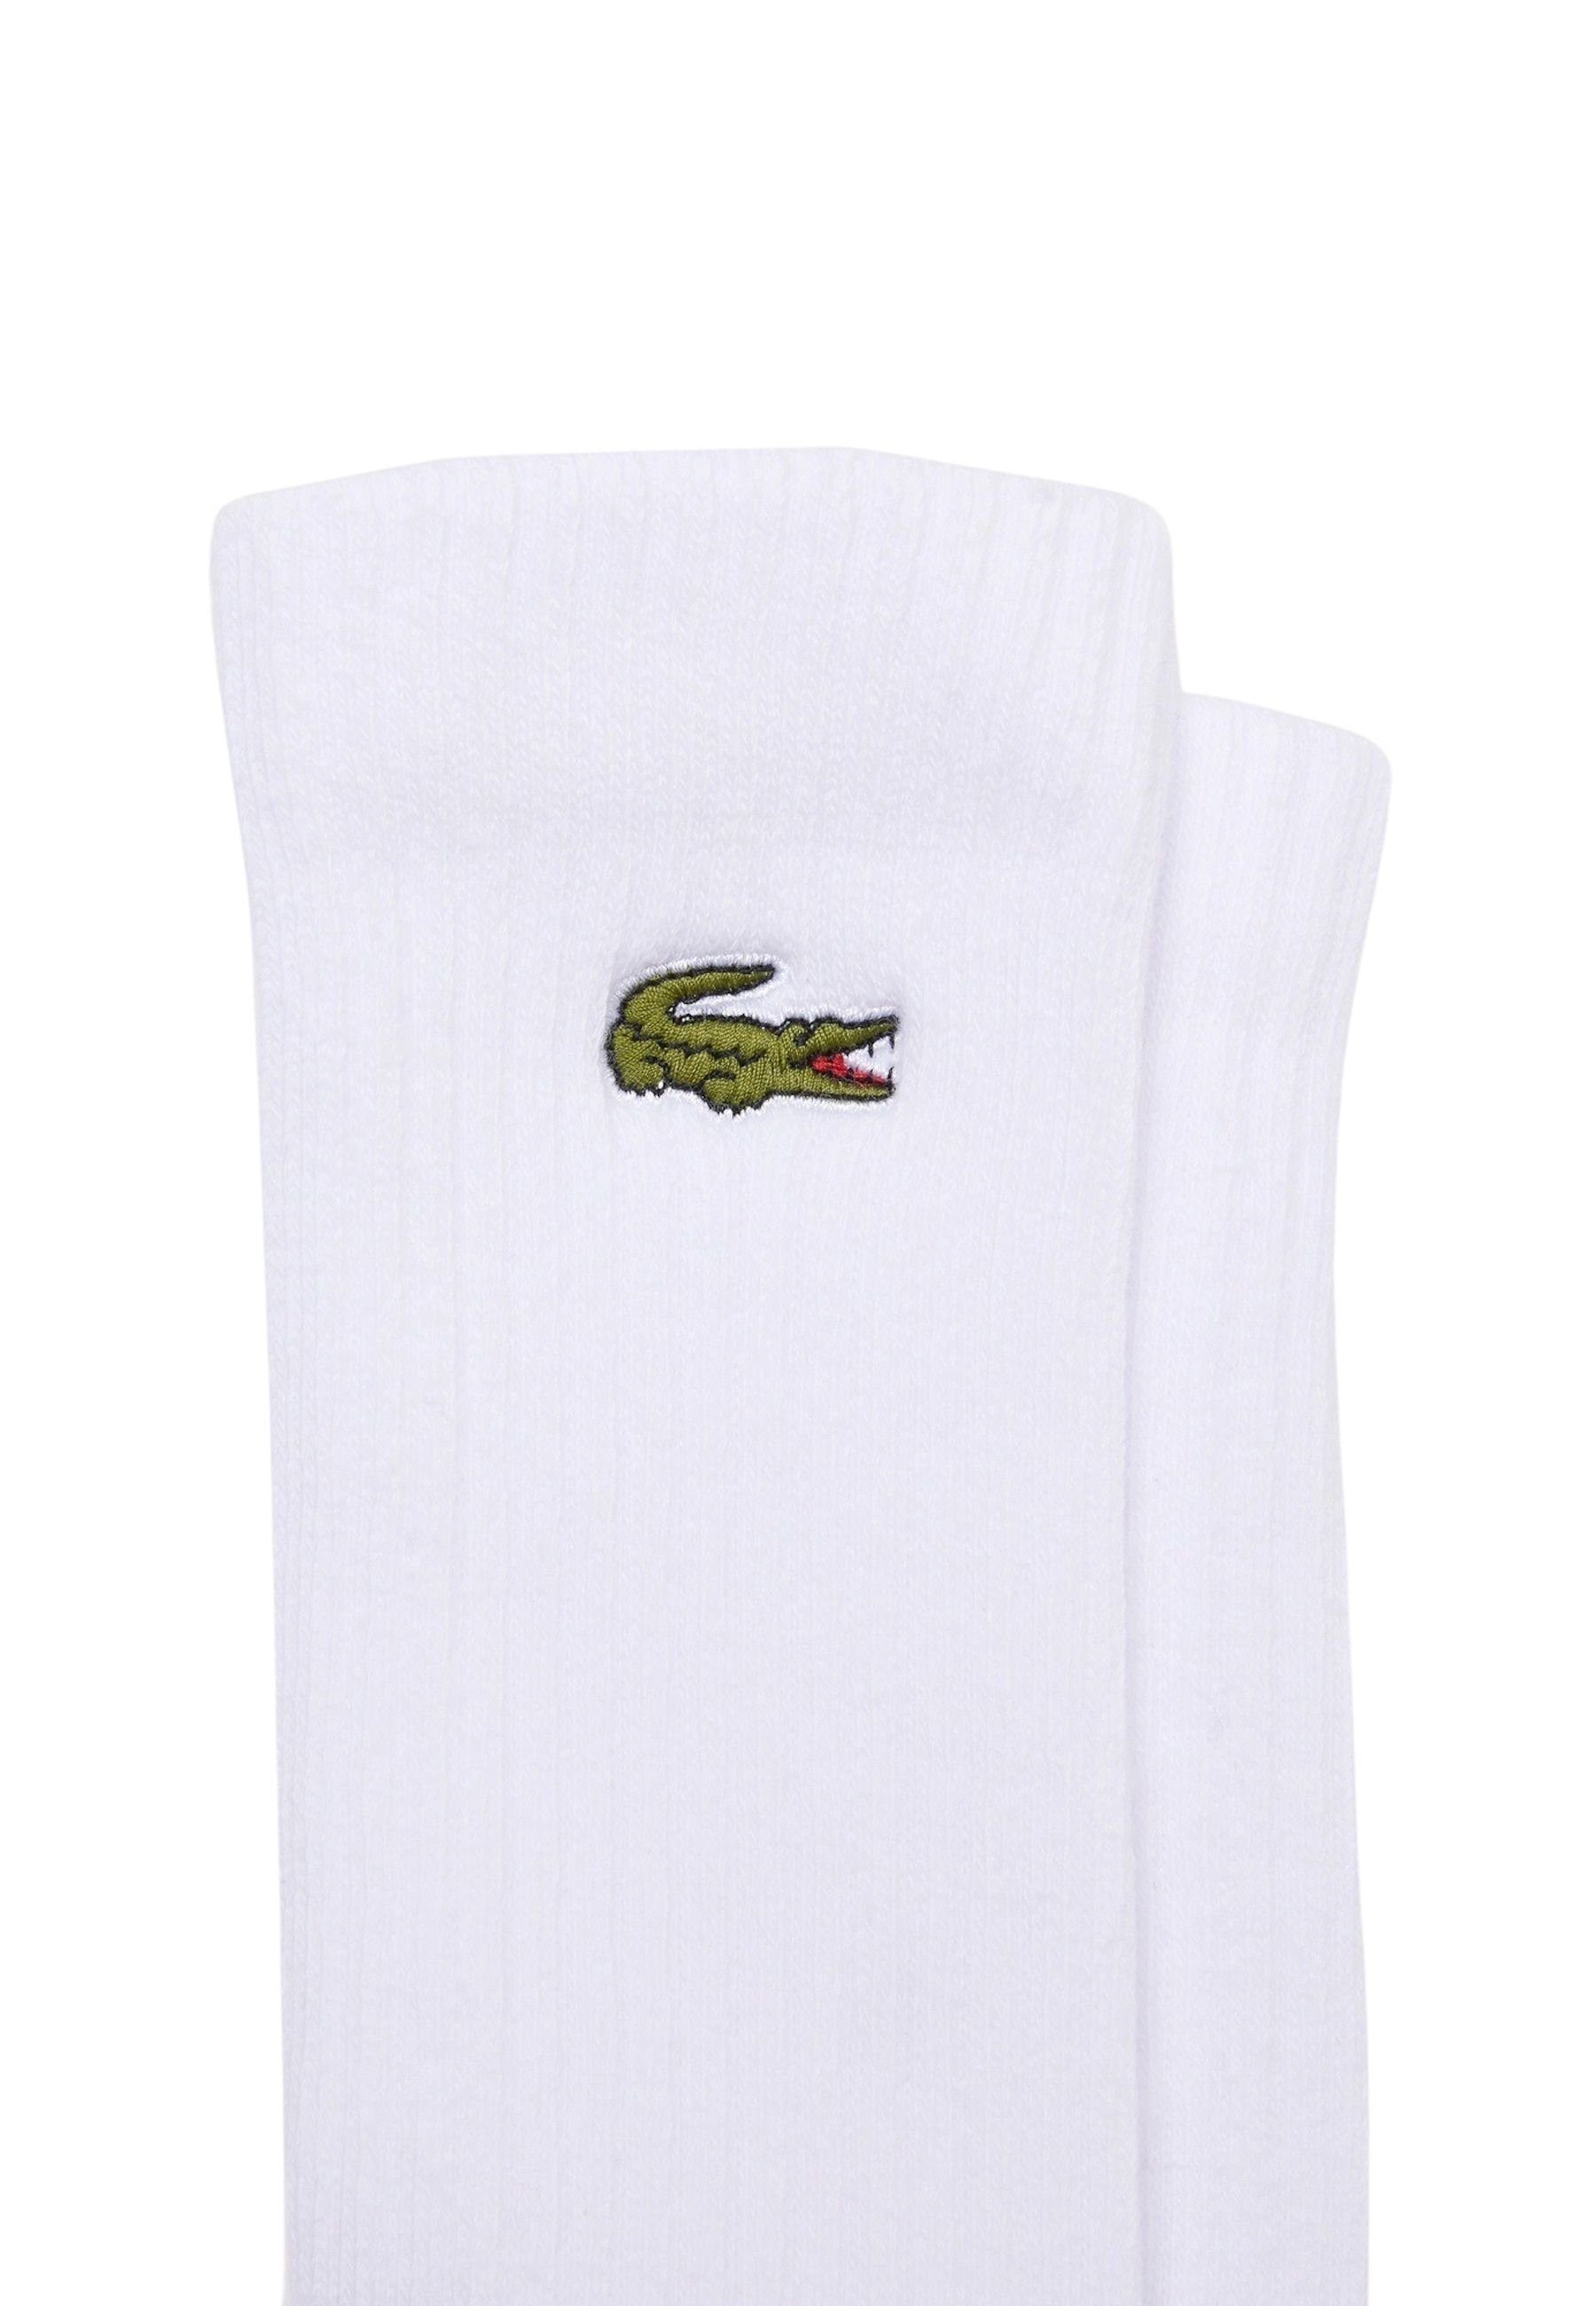 Lacoste Socken Socken Permanent Offer Socken weiß (3-Paar) hohe Dreierpack